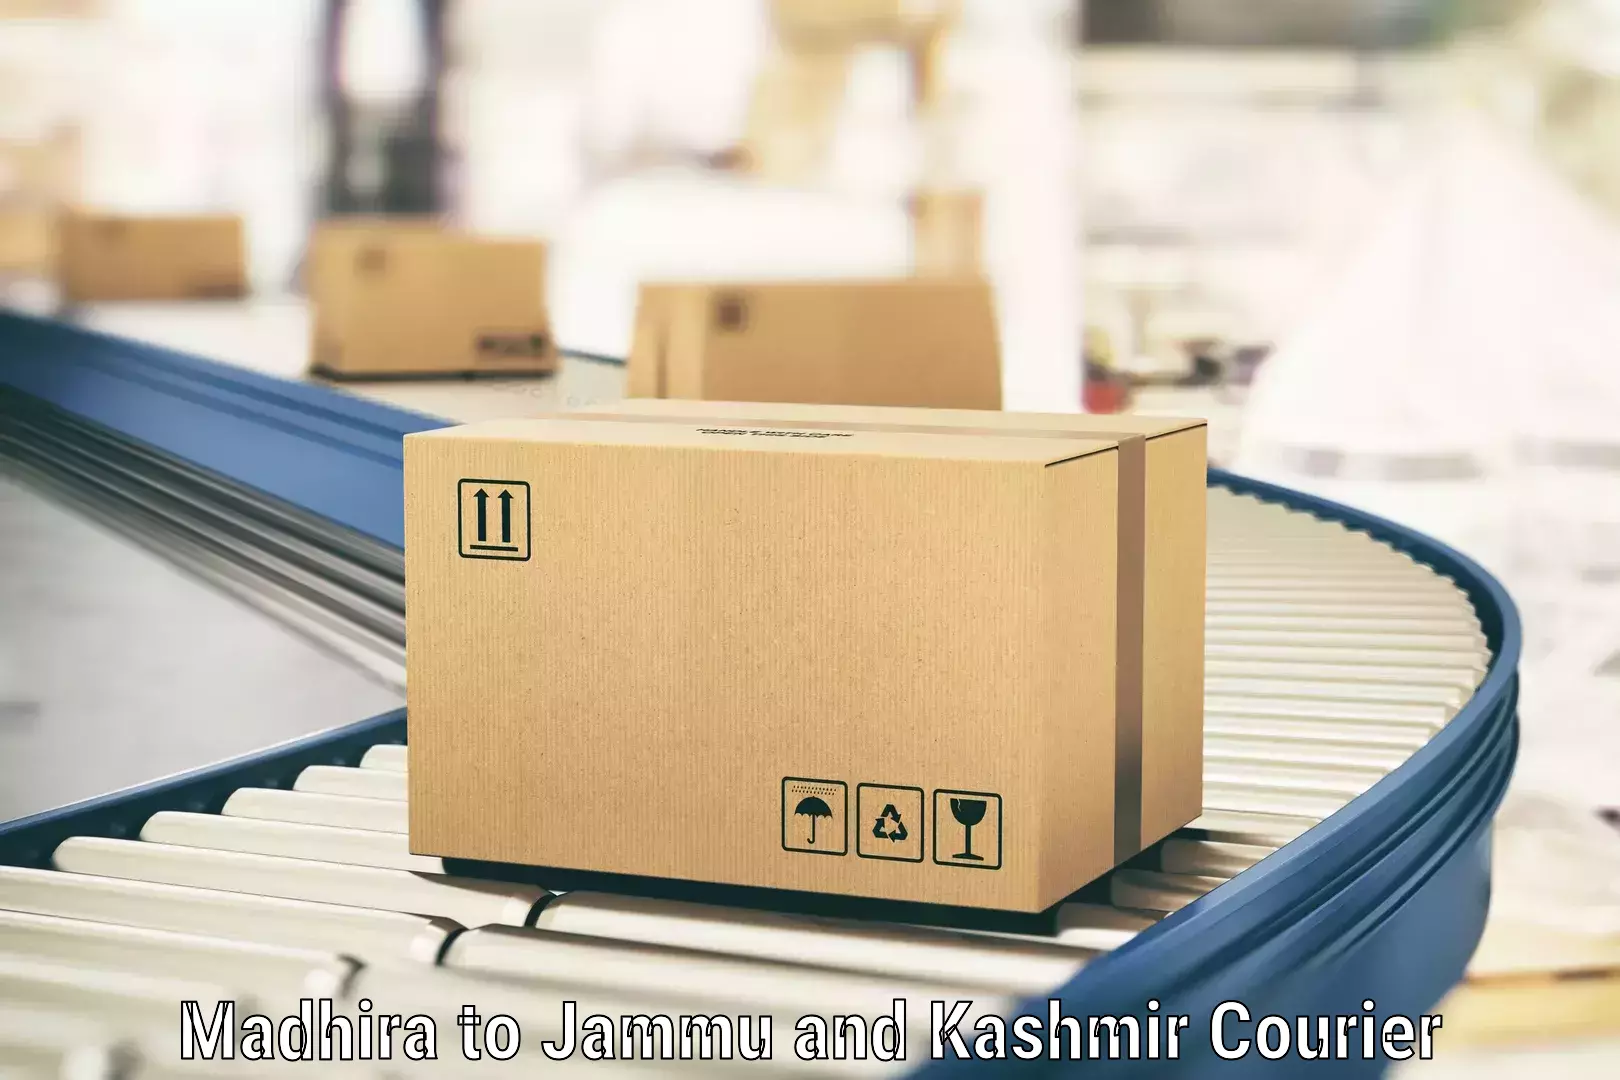 Customer-centric shipping in Madhira to Billawar